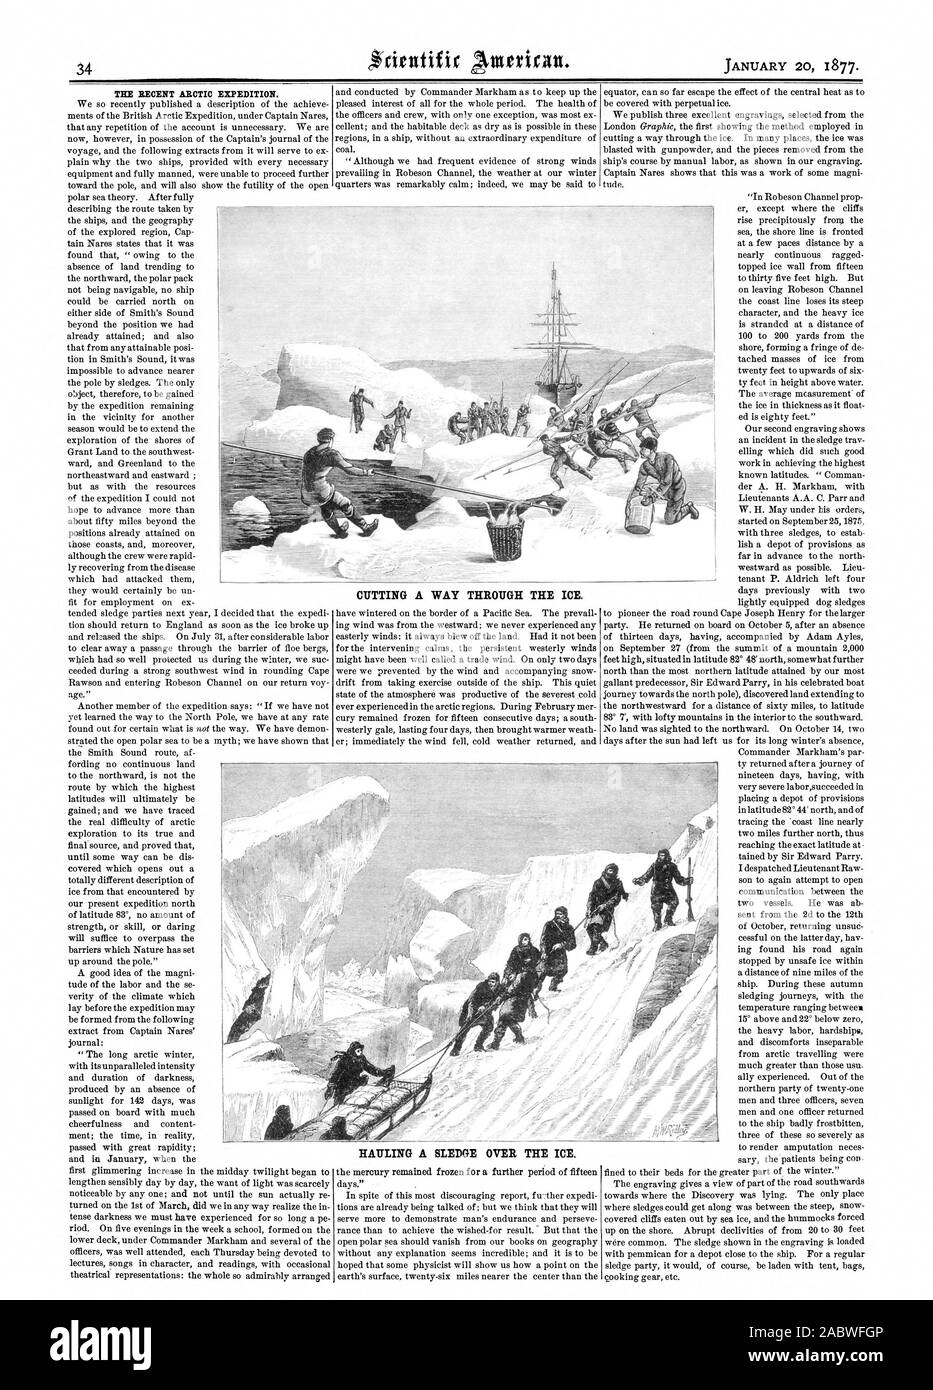 Die jüngsten arktischen Expedition. Schneiden einen Weg durch das Eis. Schleppen einen Schlitten ÜBER DAS EIS, Scientific American, 1877-01-20 Stockfoto